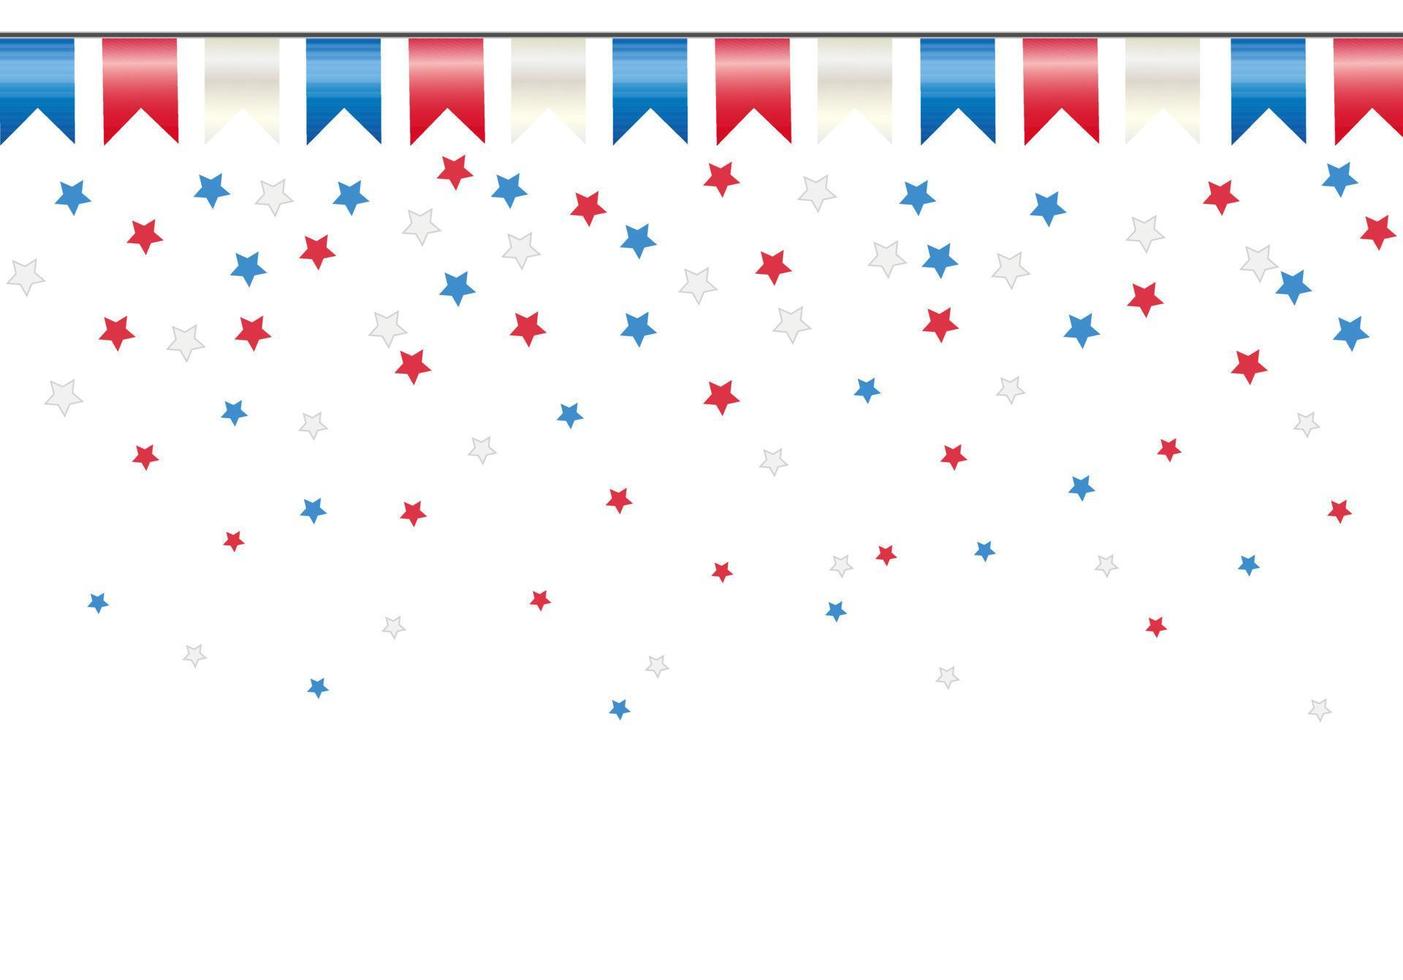 concepto de color de la bandera estadounidense o chilena. fondo blanco con estrellas y banderas coloridas. vector